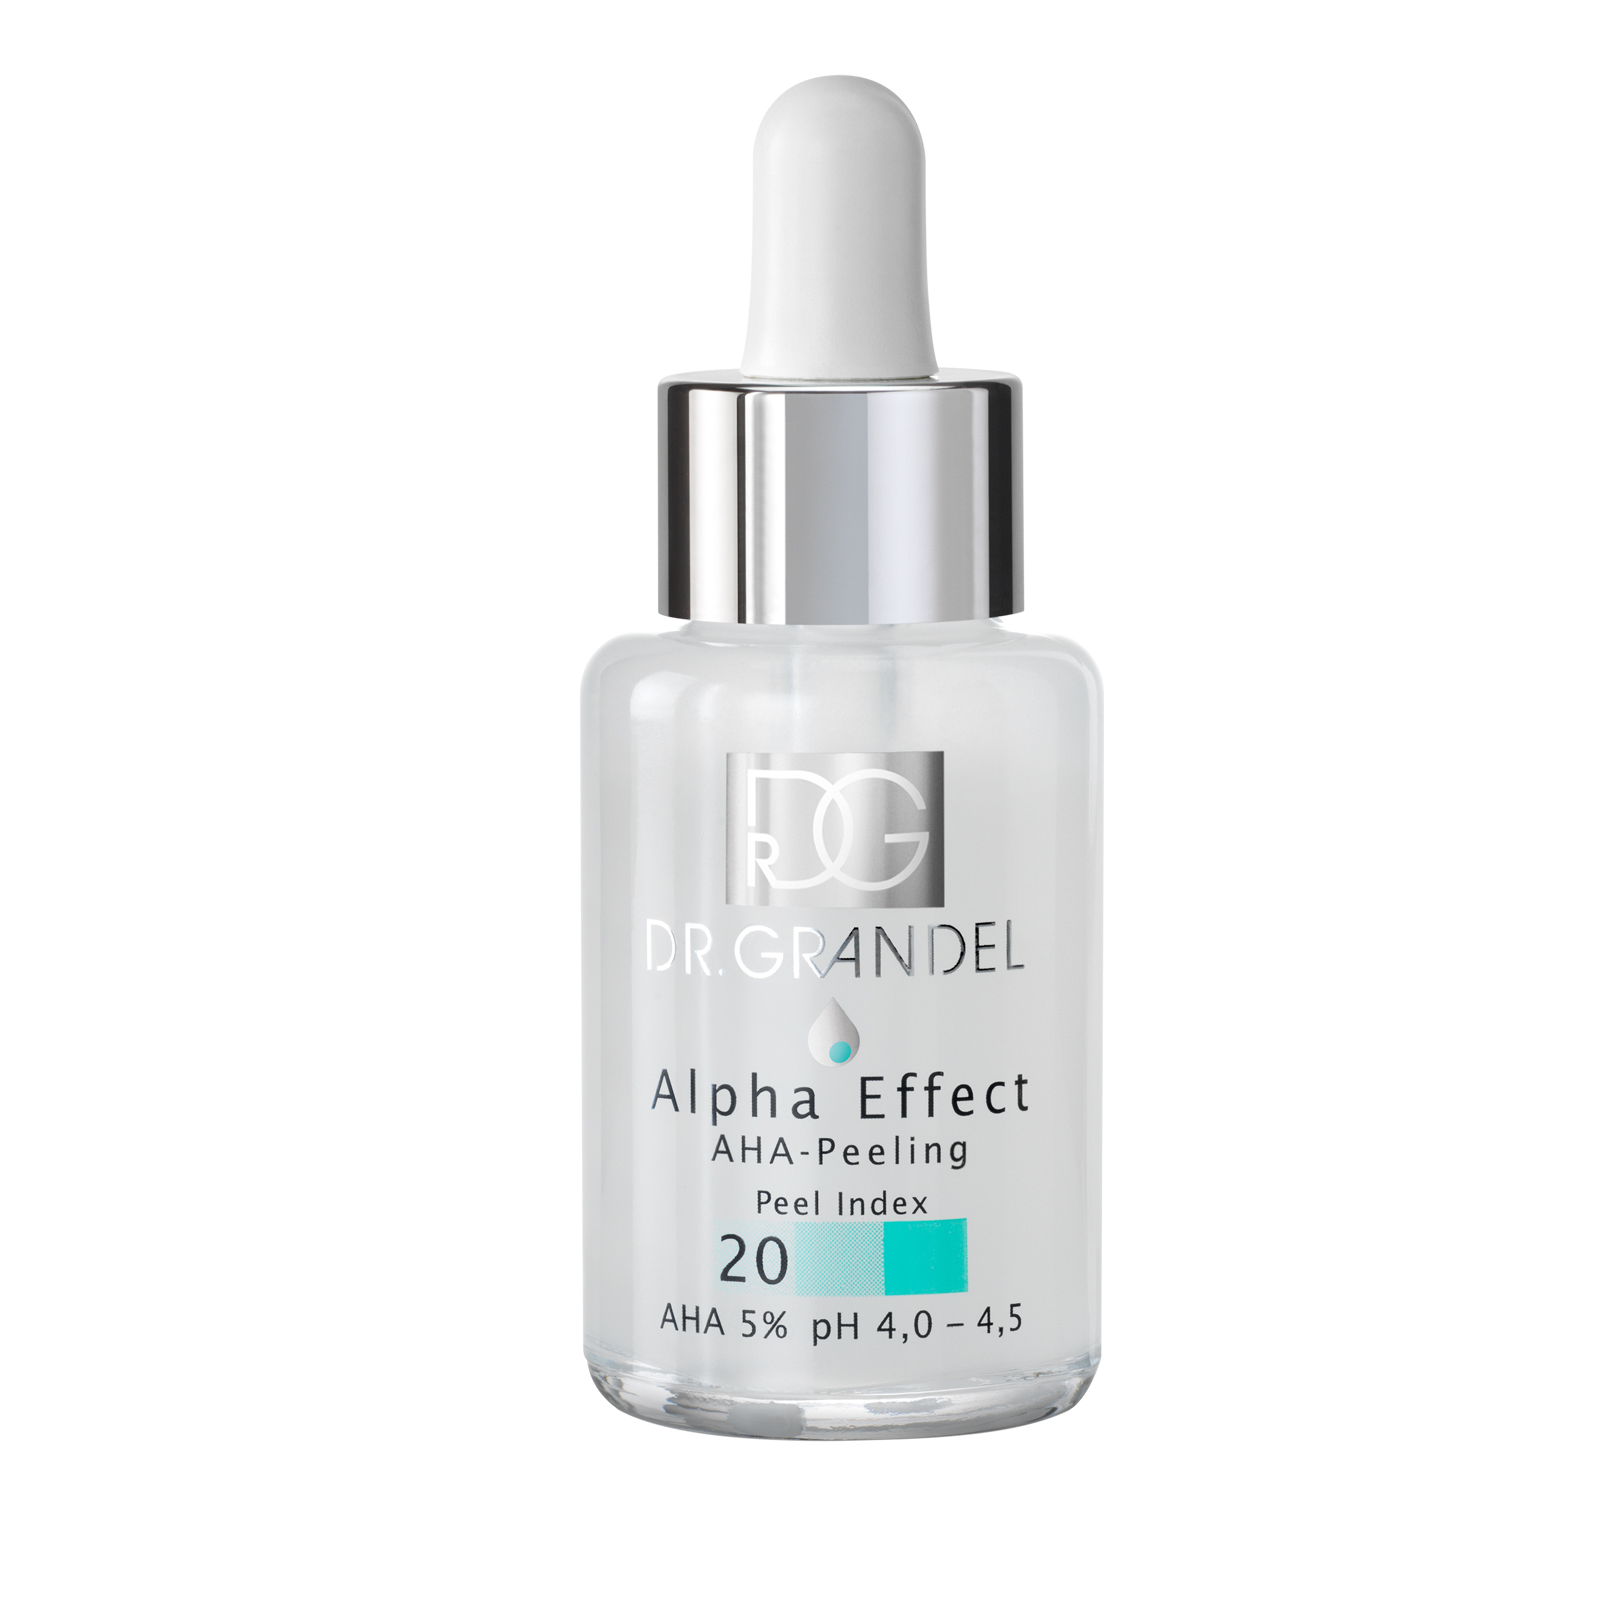 Dr. Grandel Alpha Effect Aha-Peeling Peel Index 20 30 ml     Gesichtsreinigung